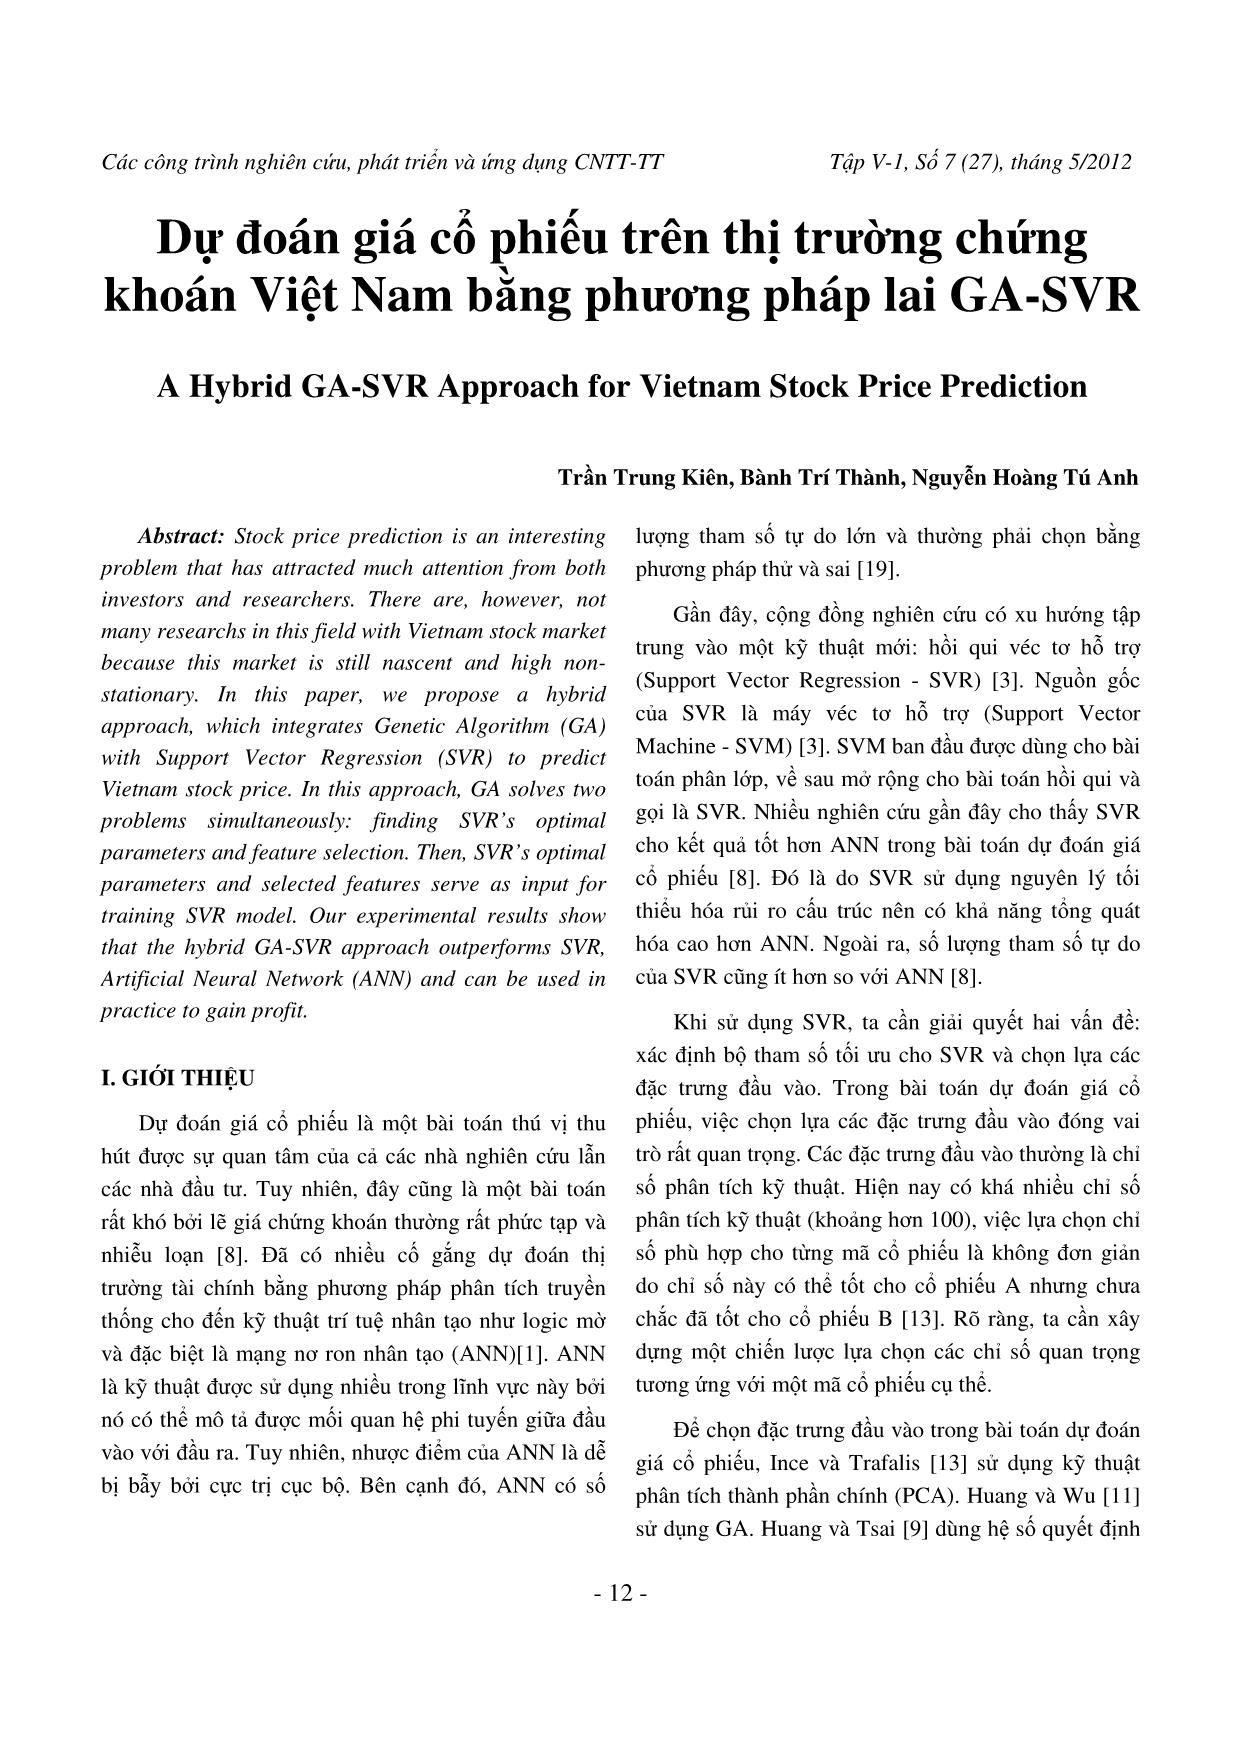 Dự đoán giá cổ phiếu trên thị trường chứng khoán Việt Nam bằng phương pháp lai GA-SVR trang 1